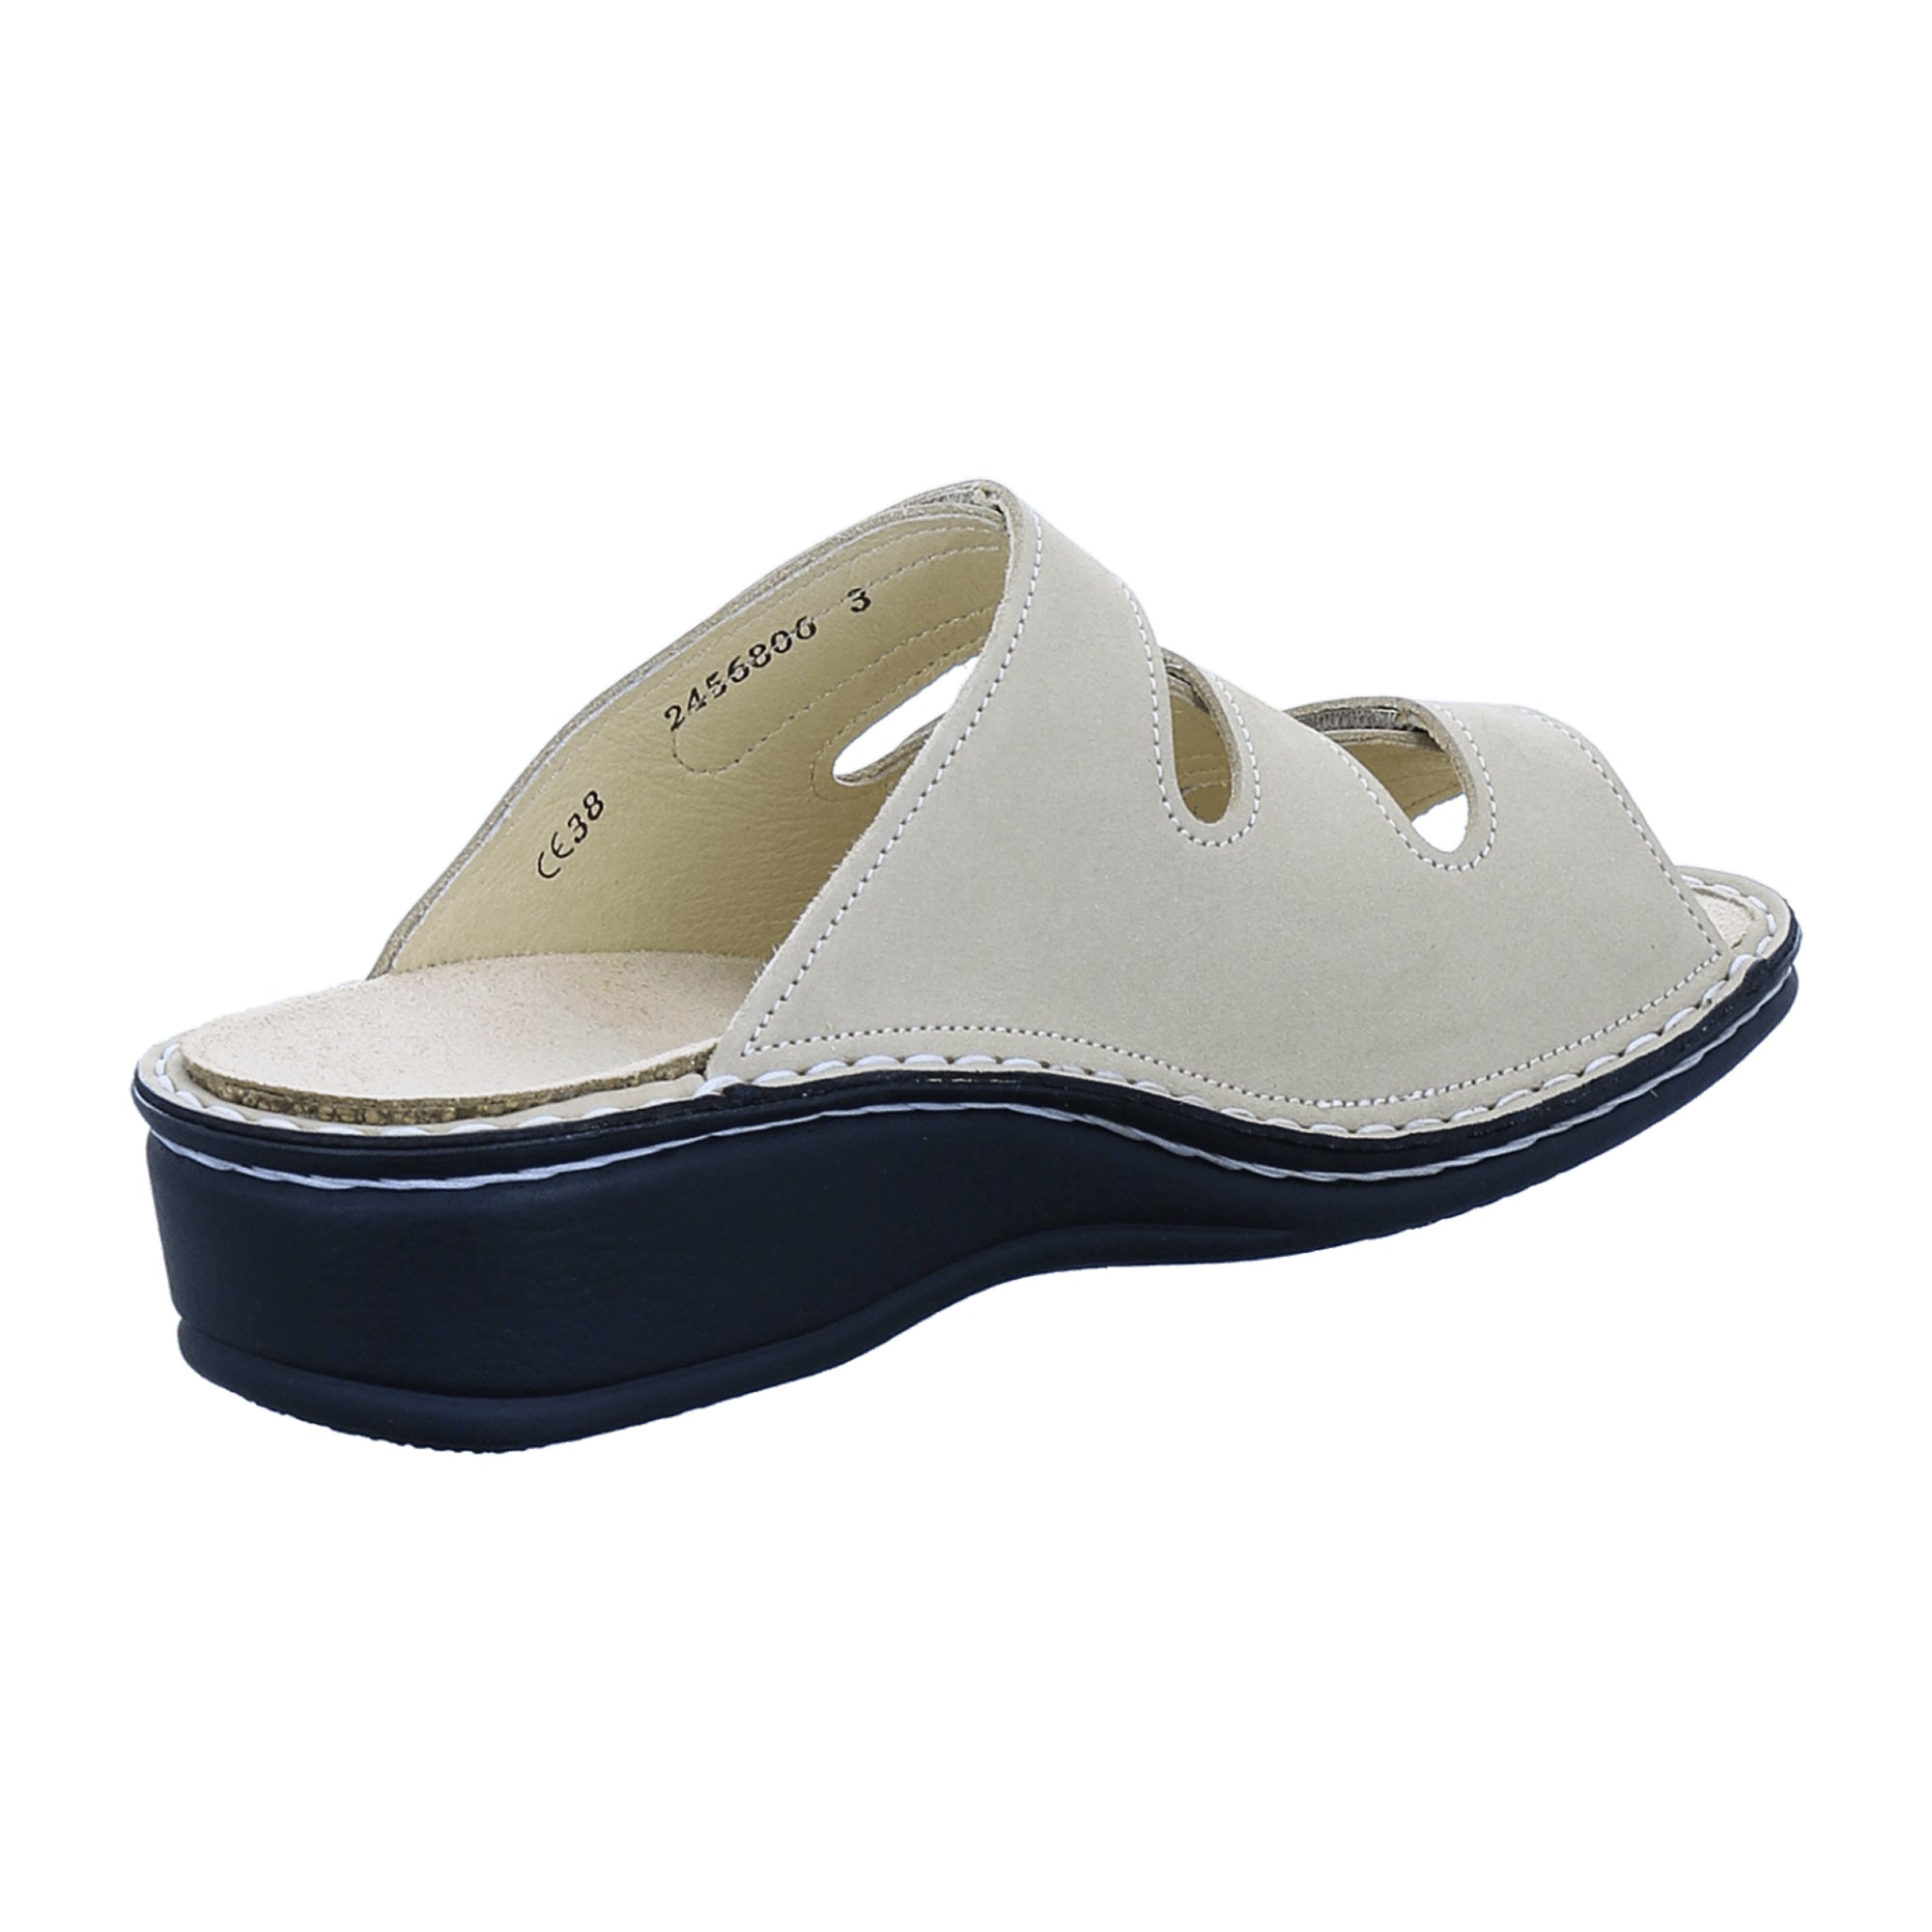 Finn Comfort Pisa Women's Sandals - Stylish & Comfortable in Beige